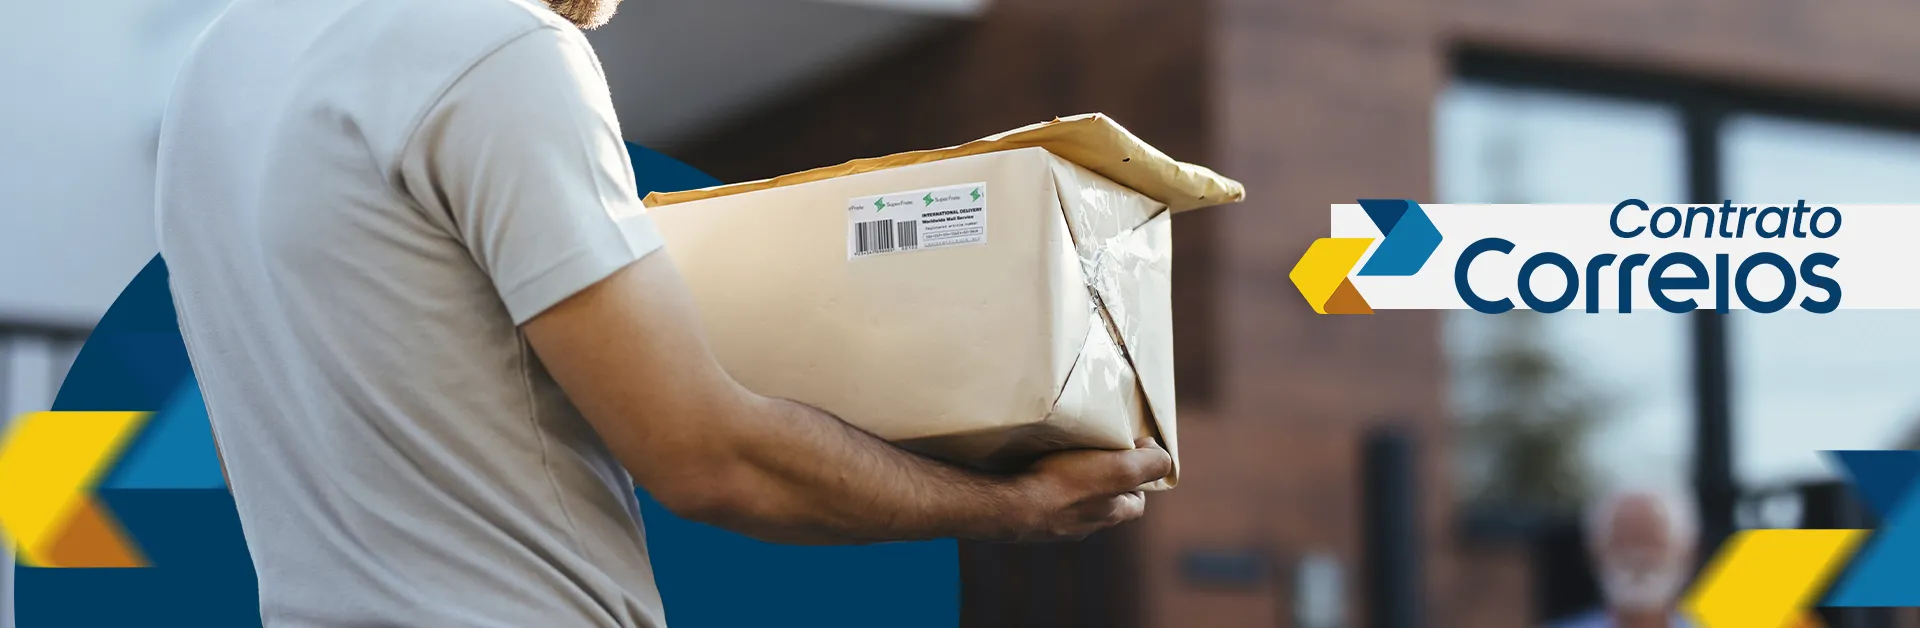 Entregador segurando uma uma caixa e um envelope a caminho da entrega, ao lado está escrito contrato Correios